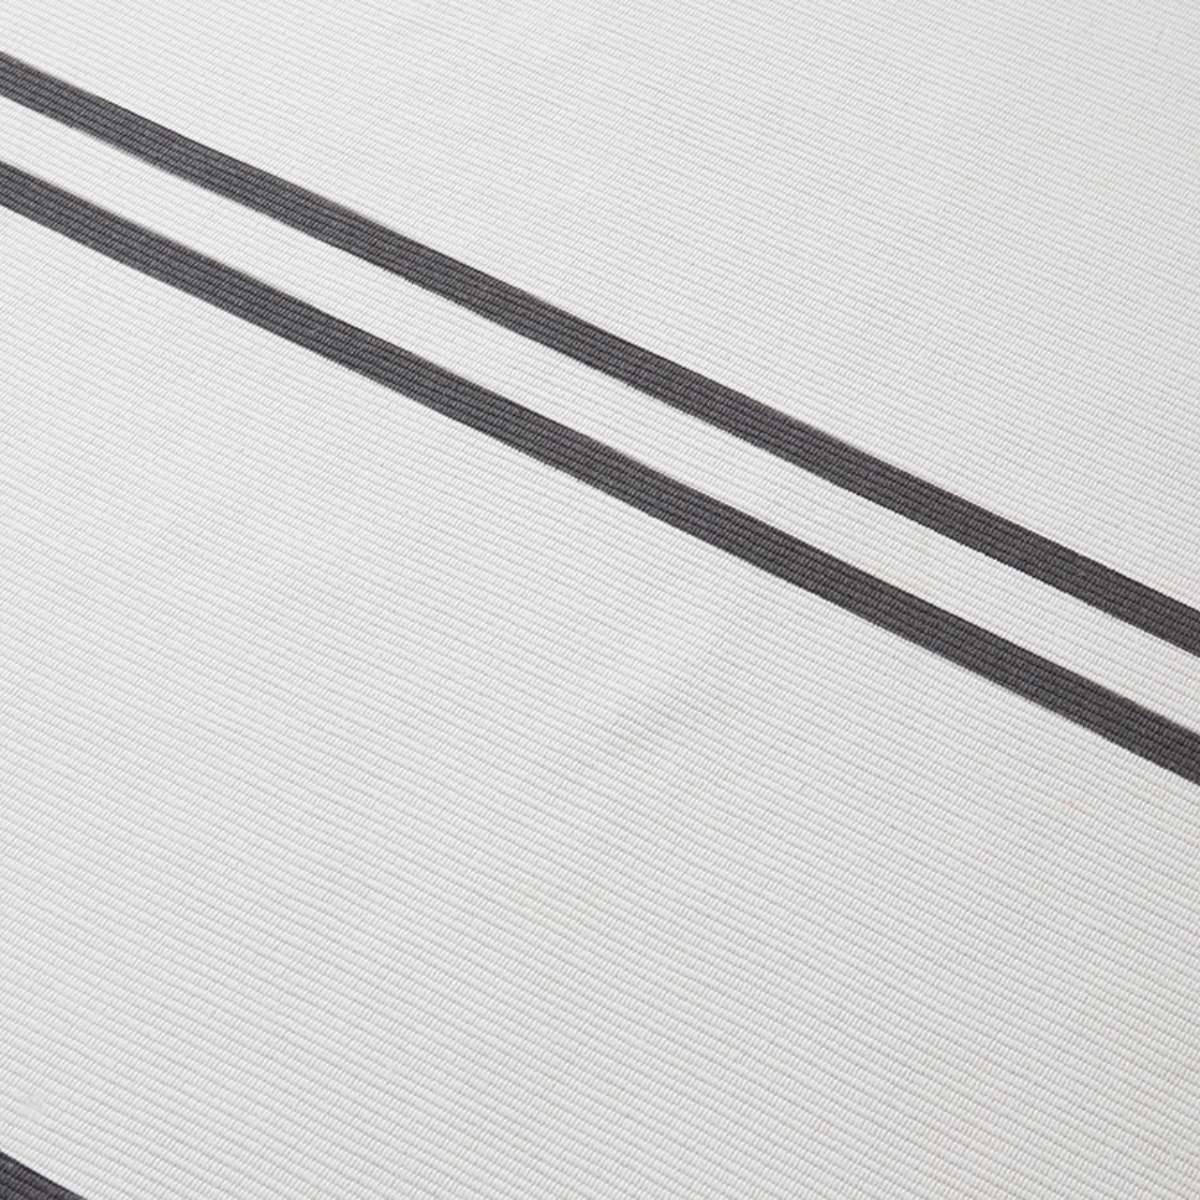 Kobie Cotton Blend Striped Floor Rug - Extra Large